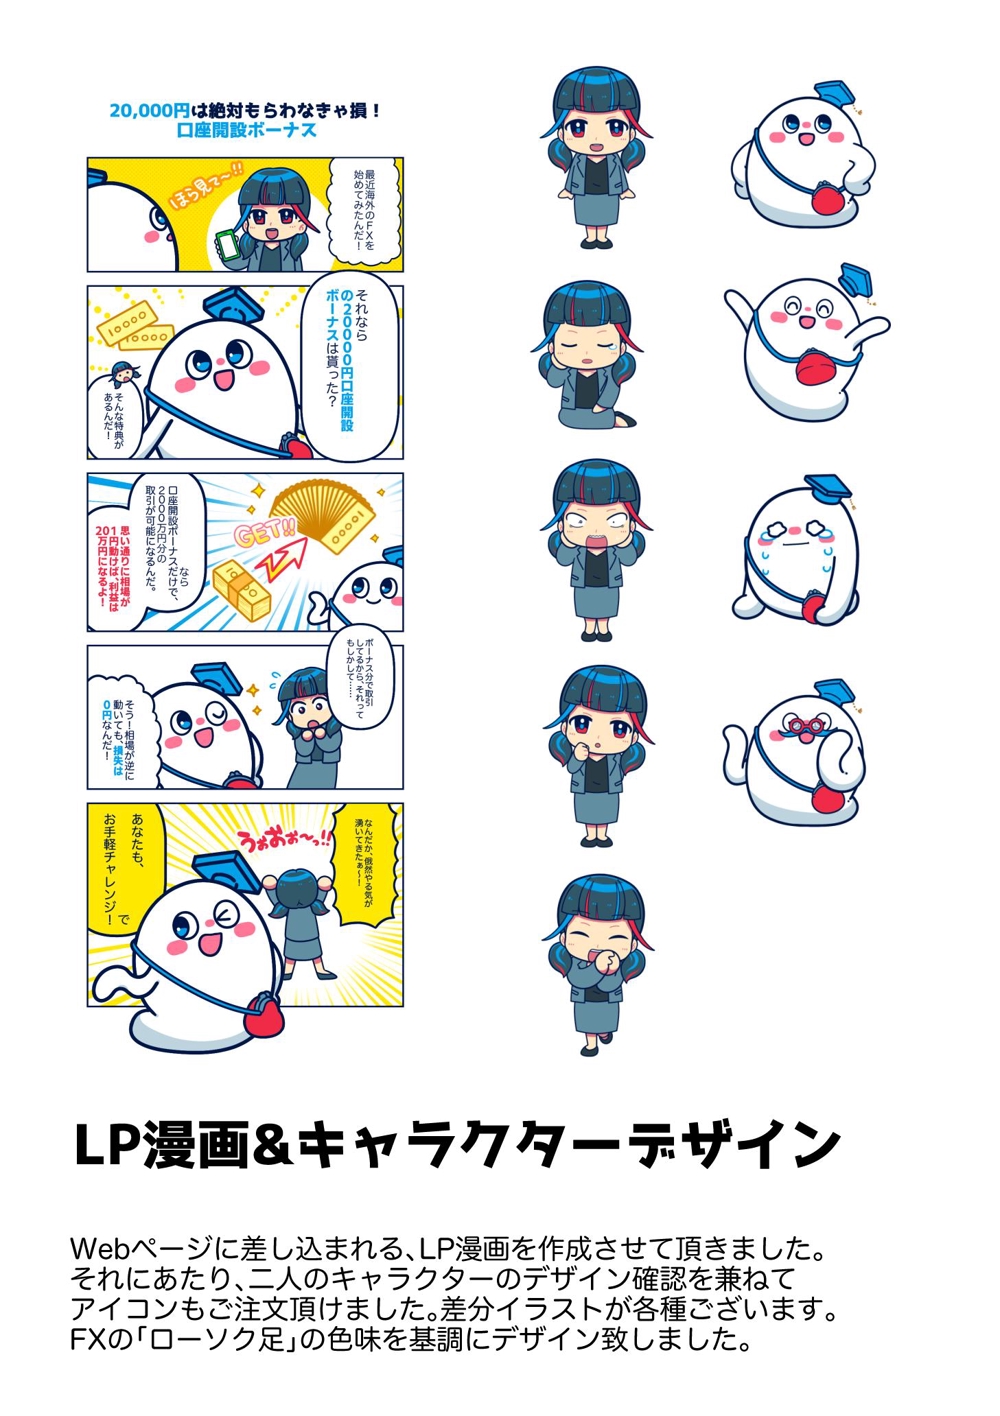 LP漫画&キャラクターデザイン